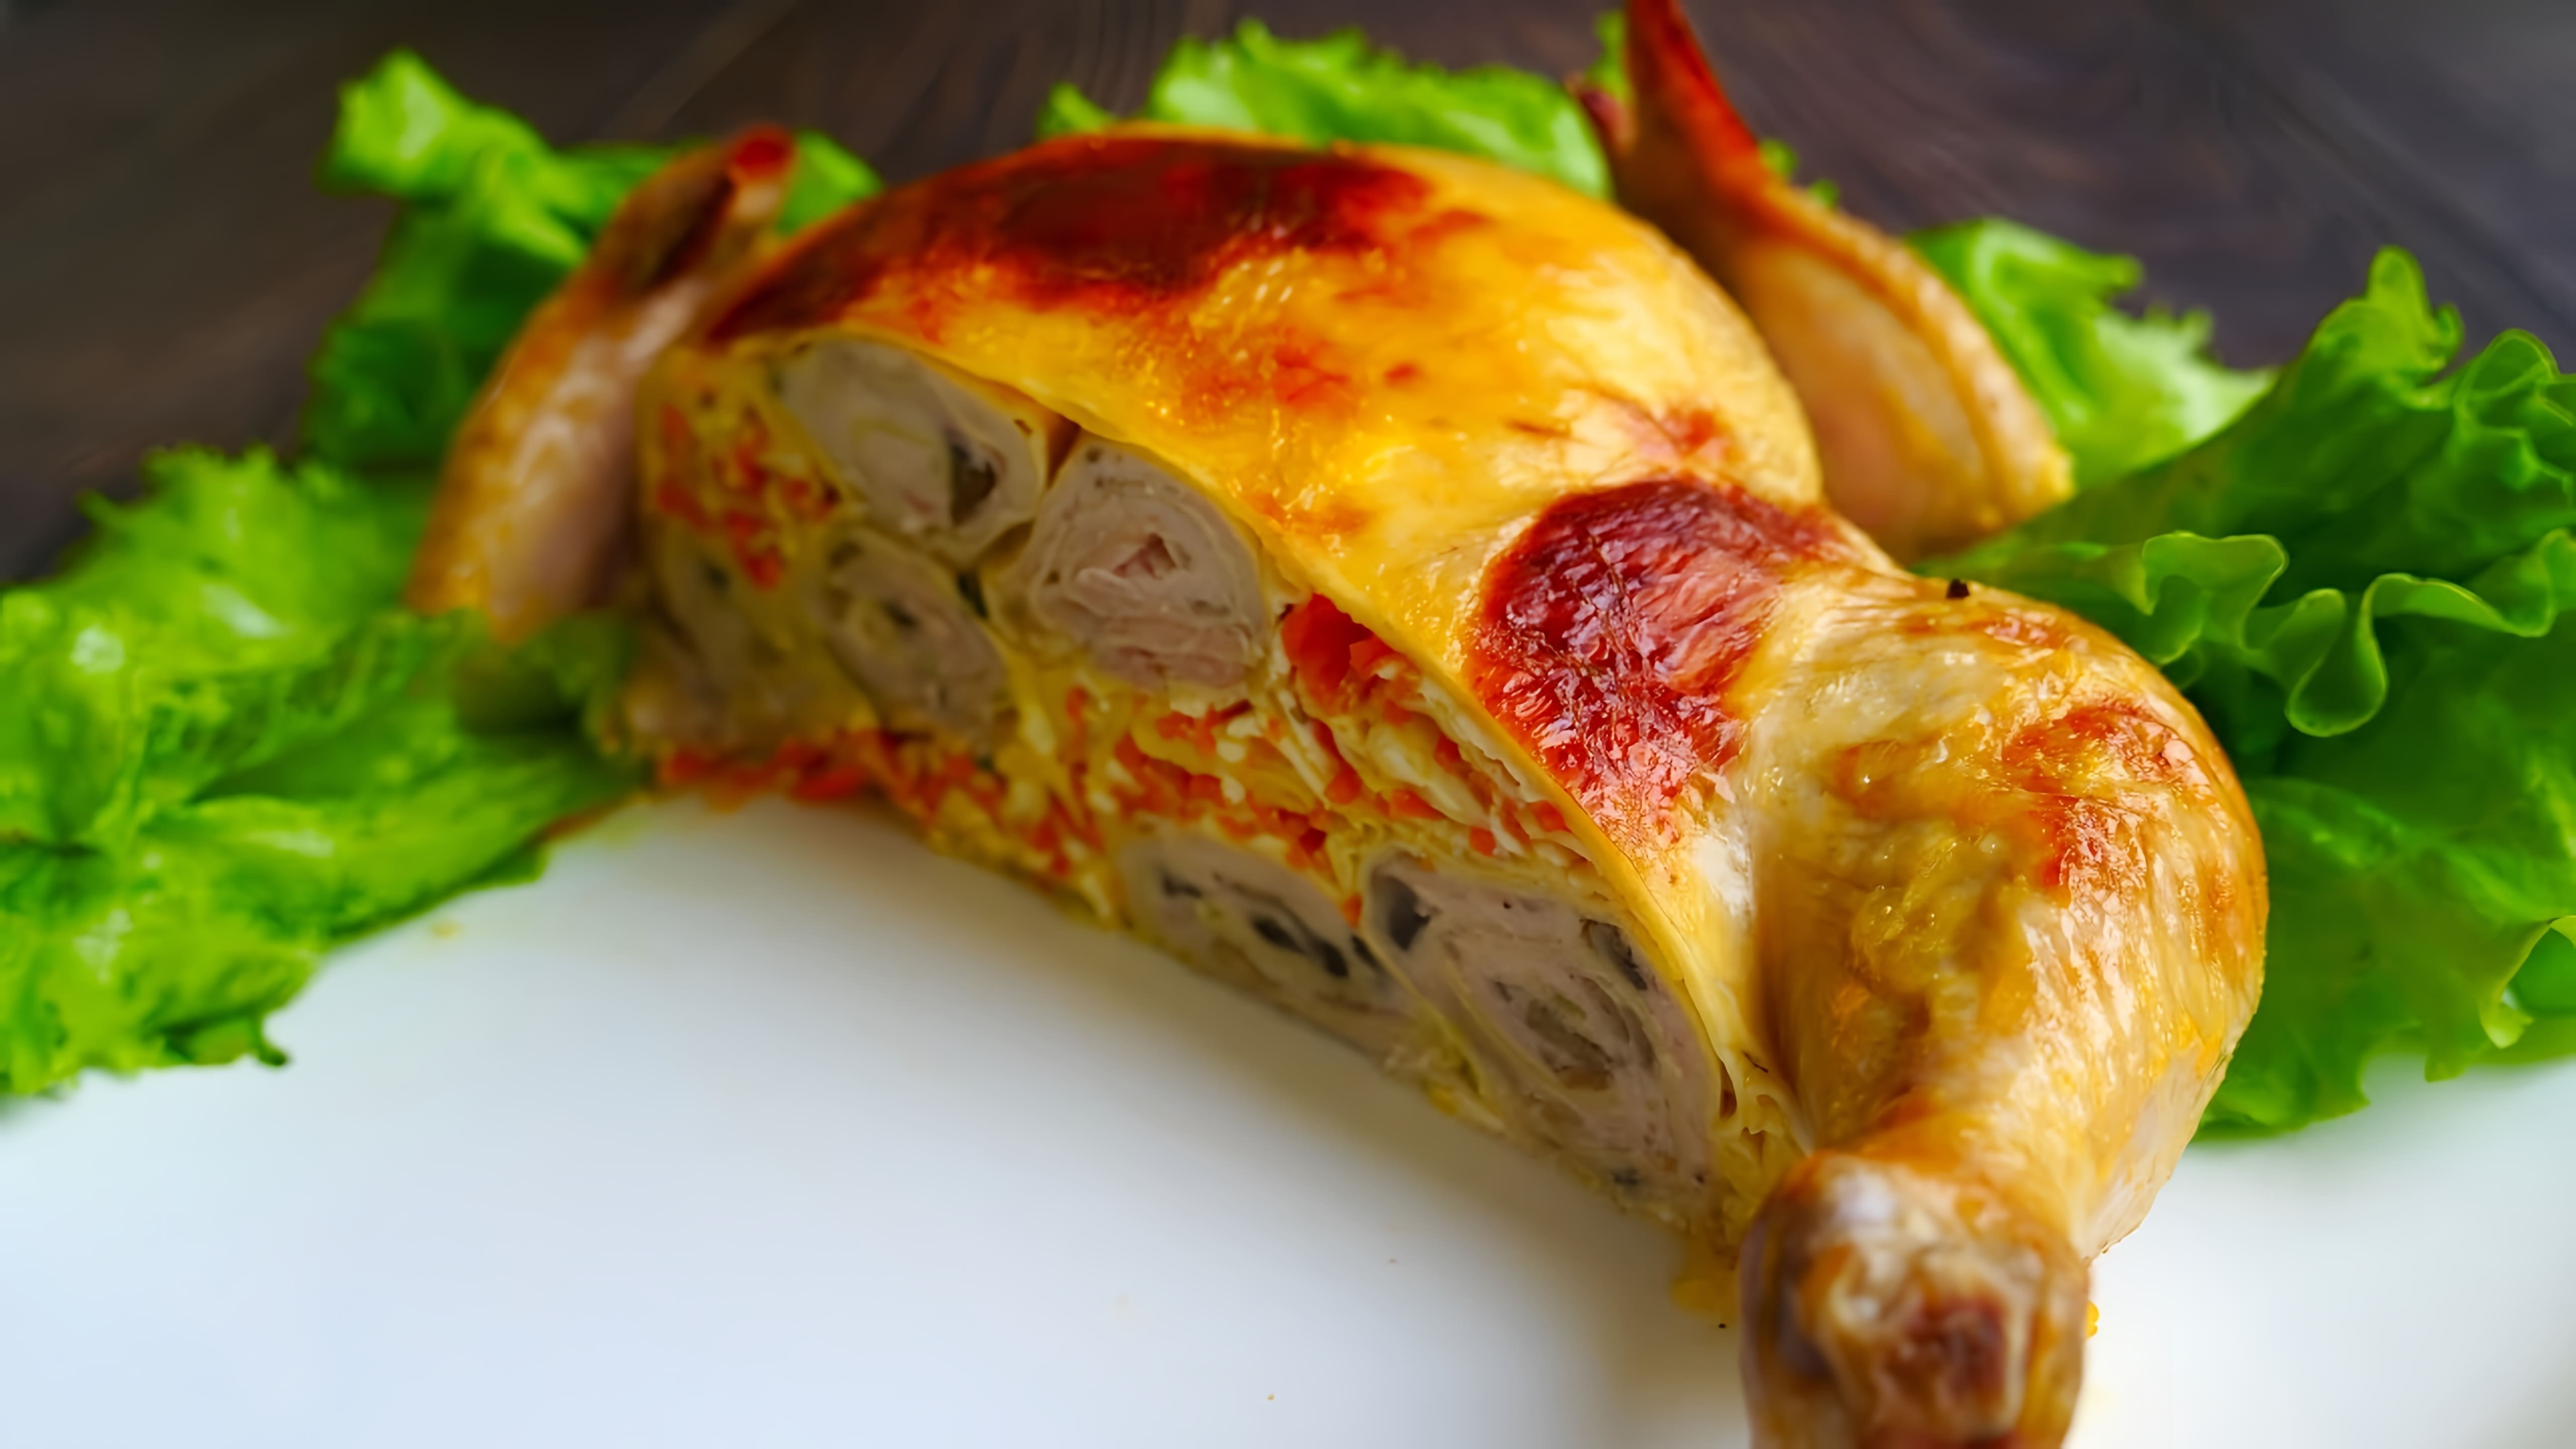 В этом видео демонстрируется процесс приготовления фаршированной курицы блинами с двумя видами начинок